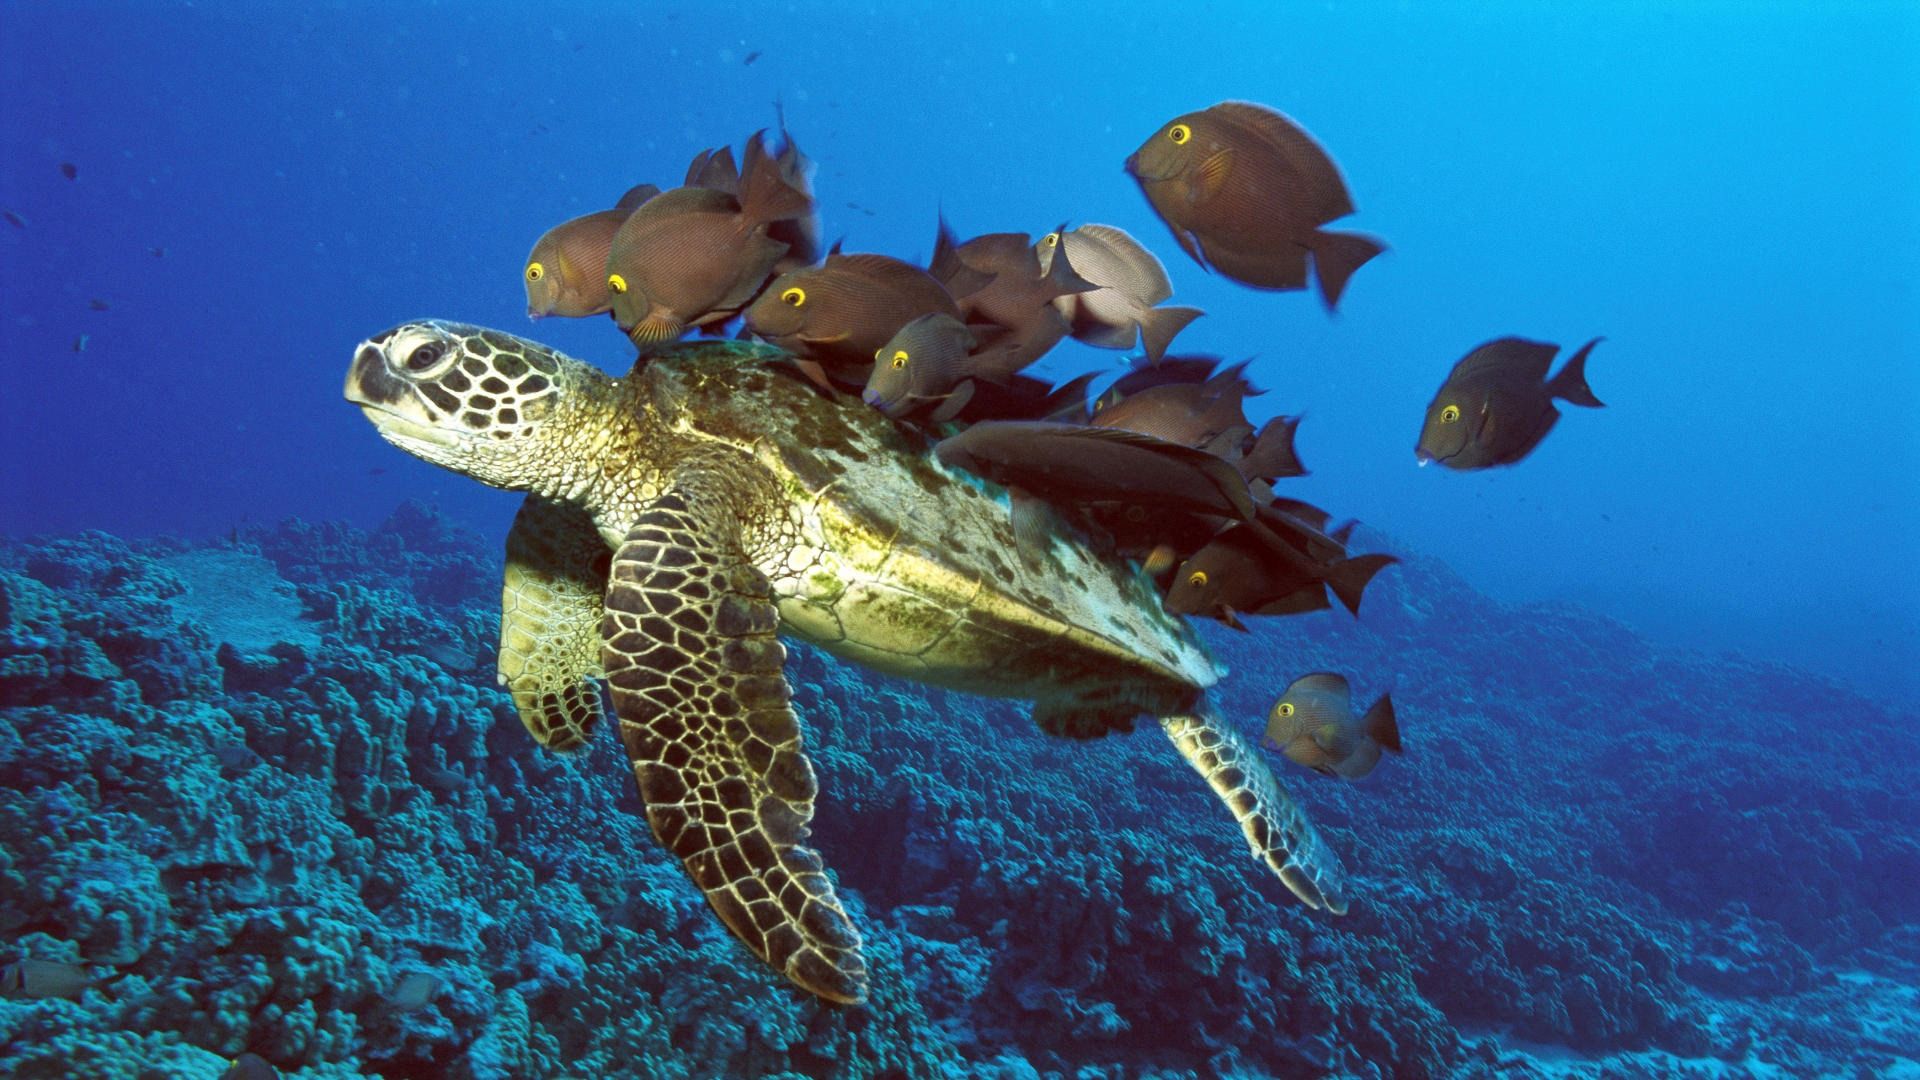 Download mobile wallpaper Underwater Turtle, Underwater Tortoise, Animals, Underwater World, Fishes for free.